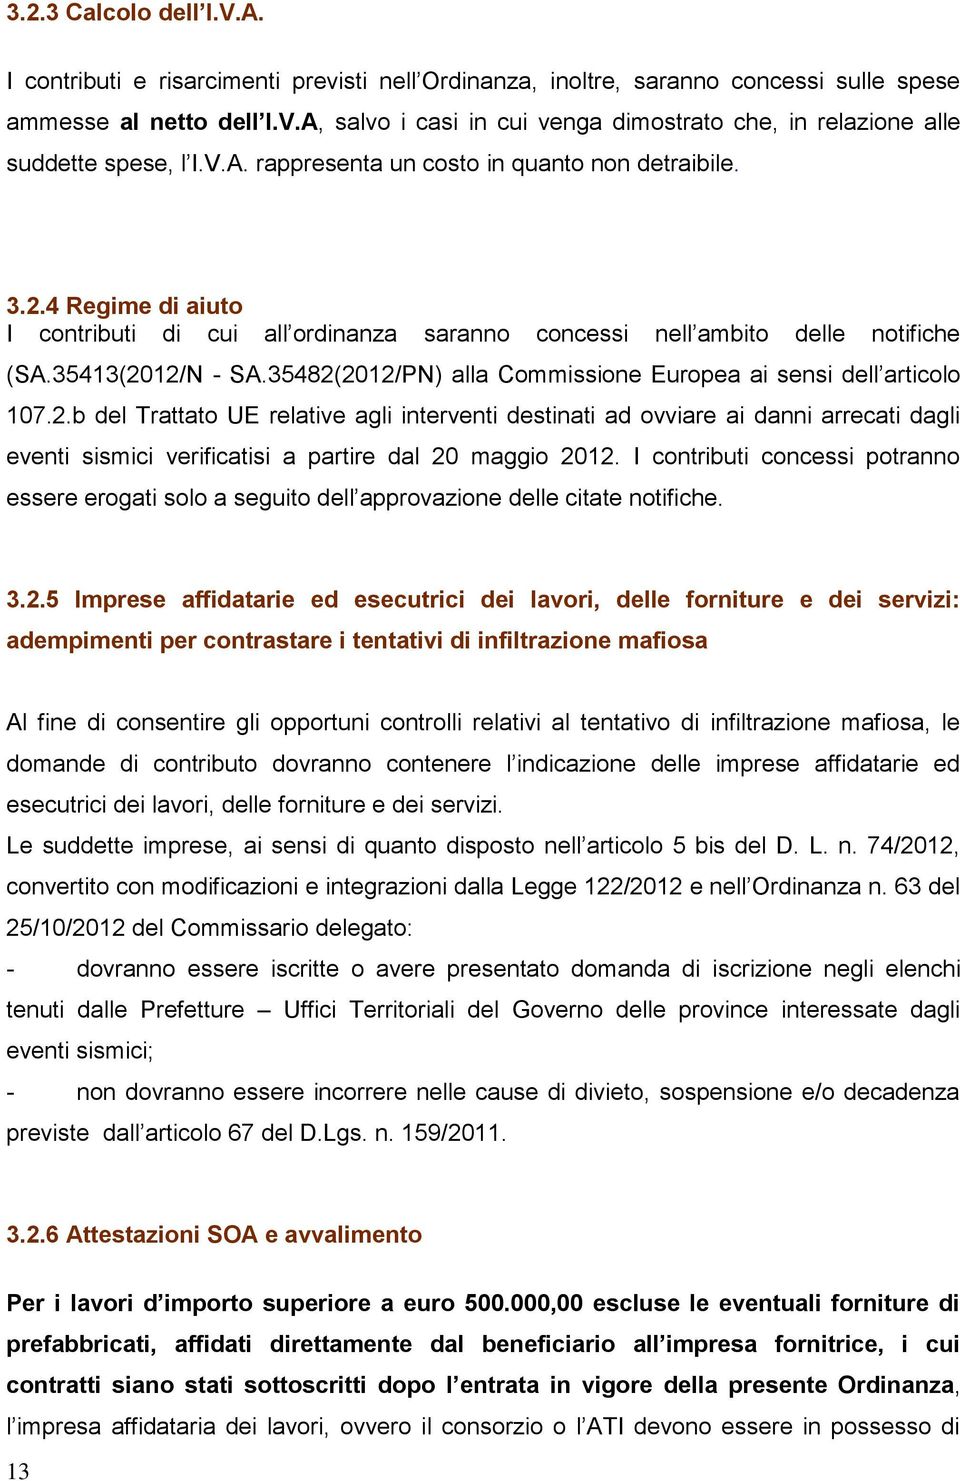 35482(2012/PN) alla Commissione Europea ai sensi dell articolo 107.2.b del Trattato UE relative agli interventi destinati ad ovviare ai danni arrecati dagli eventi sismici verificatisi a partire dal 20 maggio 2012.